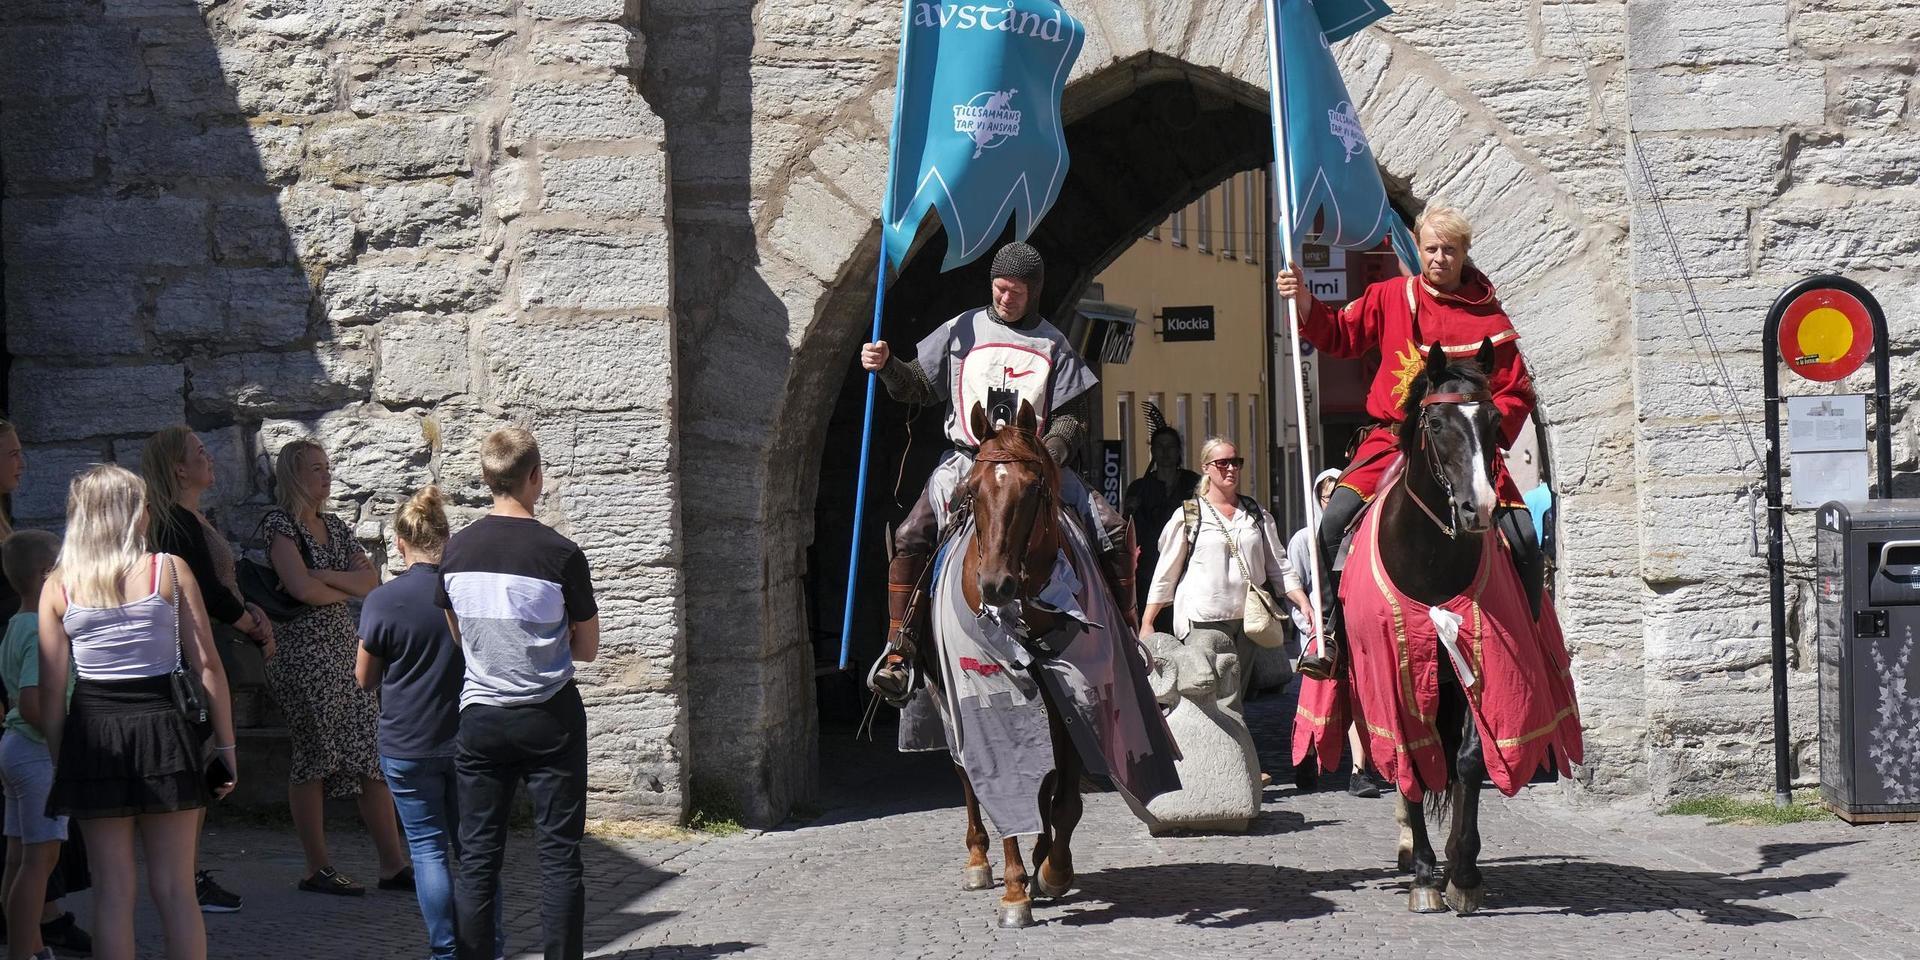 Torneamentums covidriddare ska påminna om att hålla avstånd under högskommarveckorna på Gotland. Här syns Thomas Lindgren på hästen Soprano och Anders Månsson på hästen Sara.